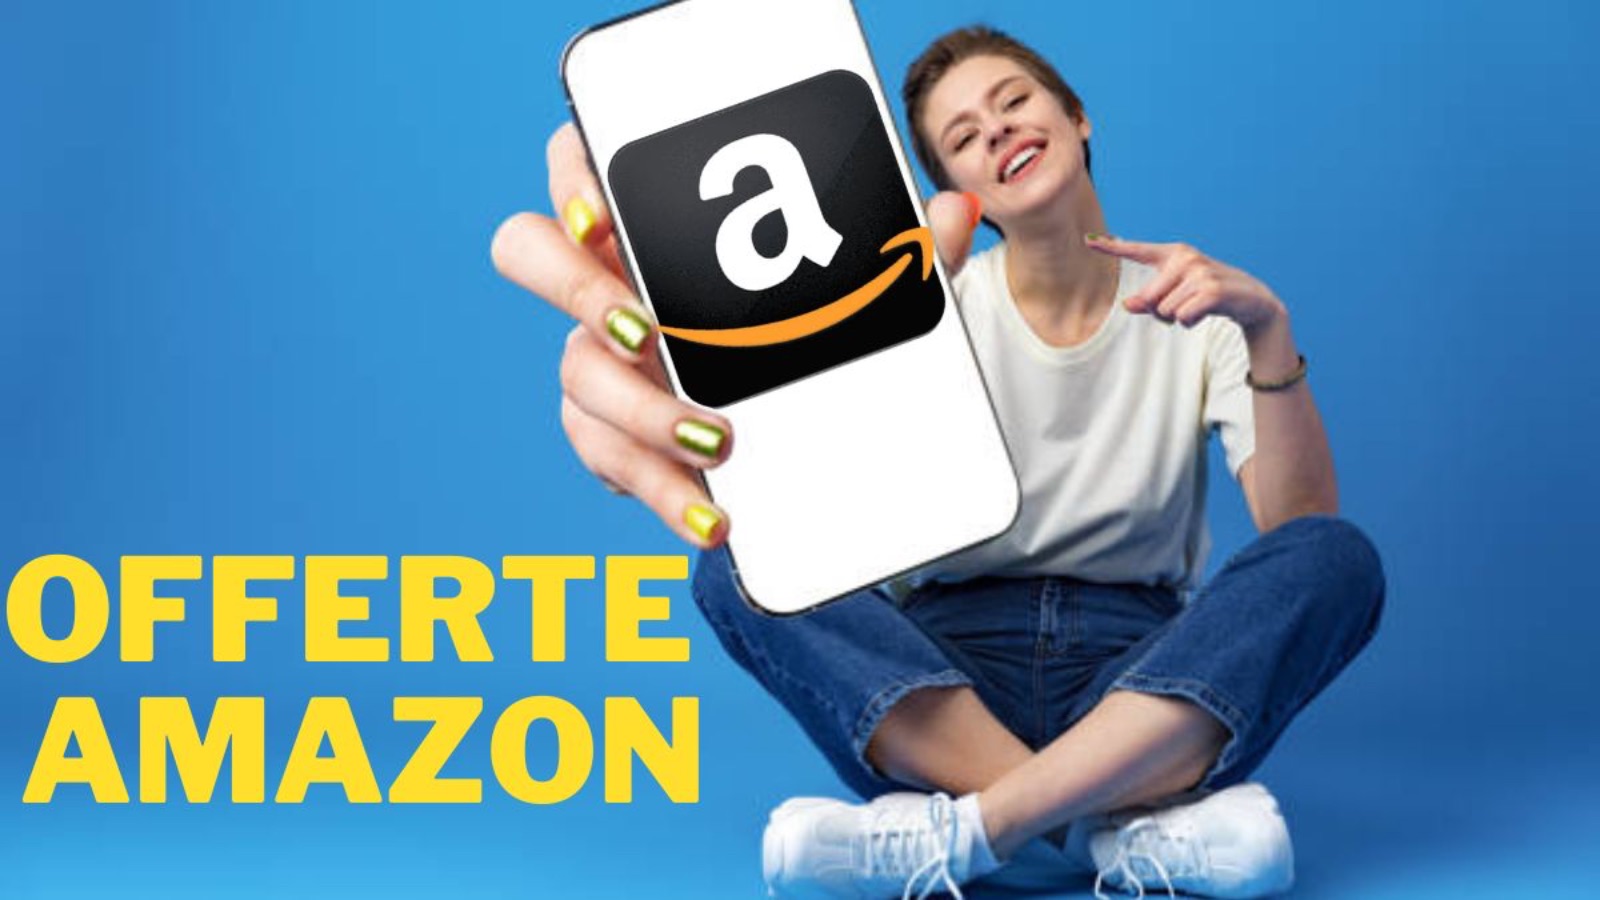 Amazon SUPER con offerte al 60% di sconto oggi